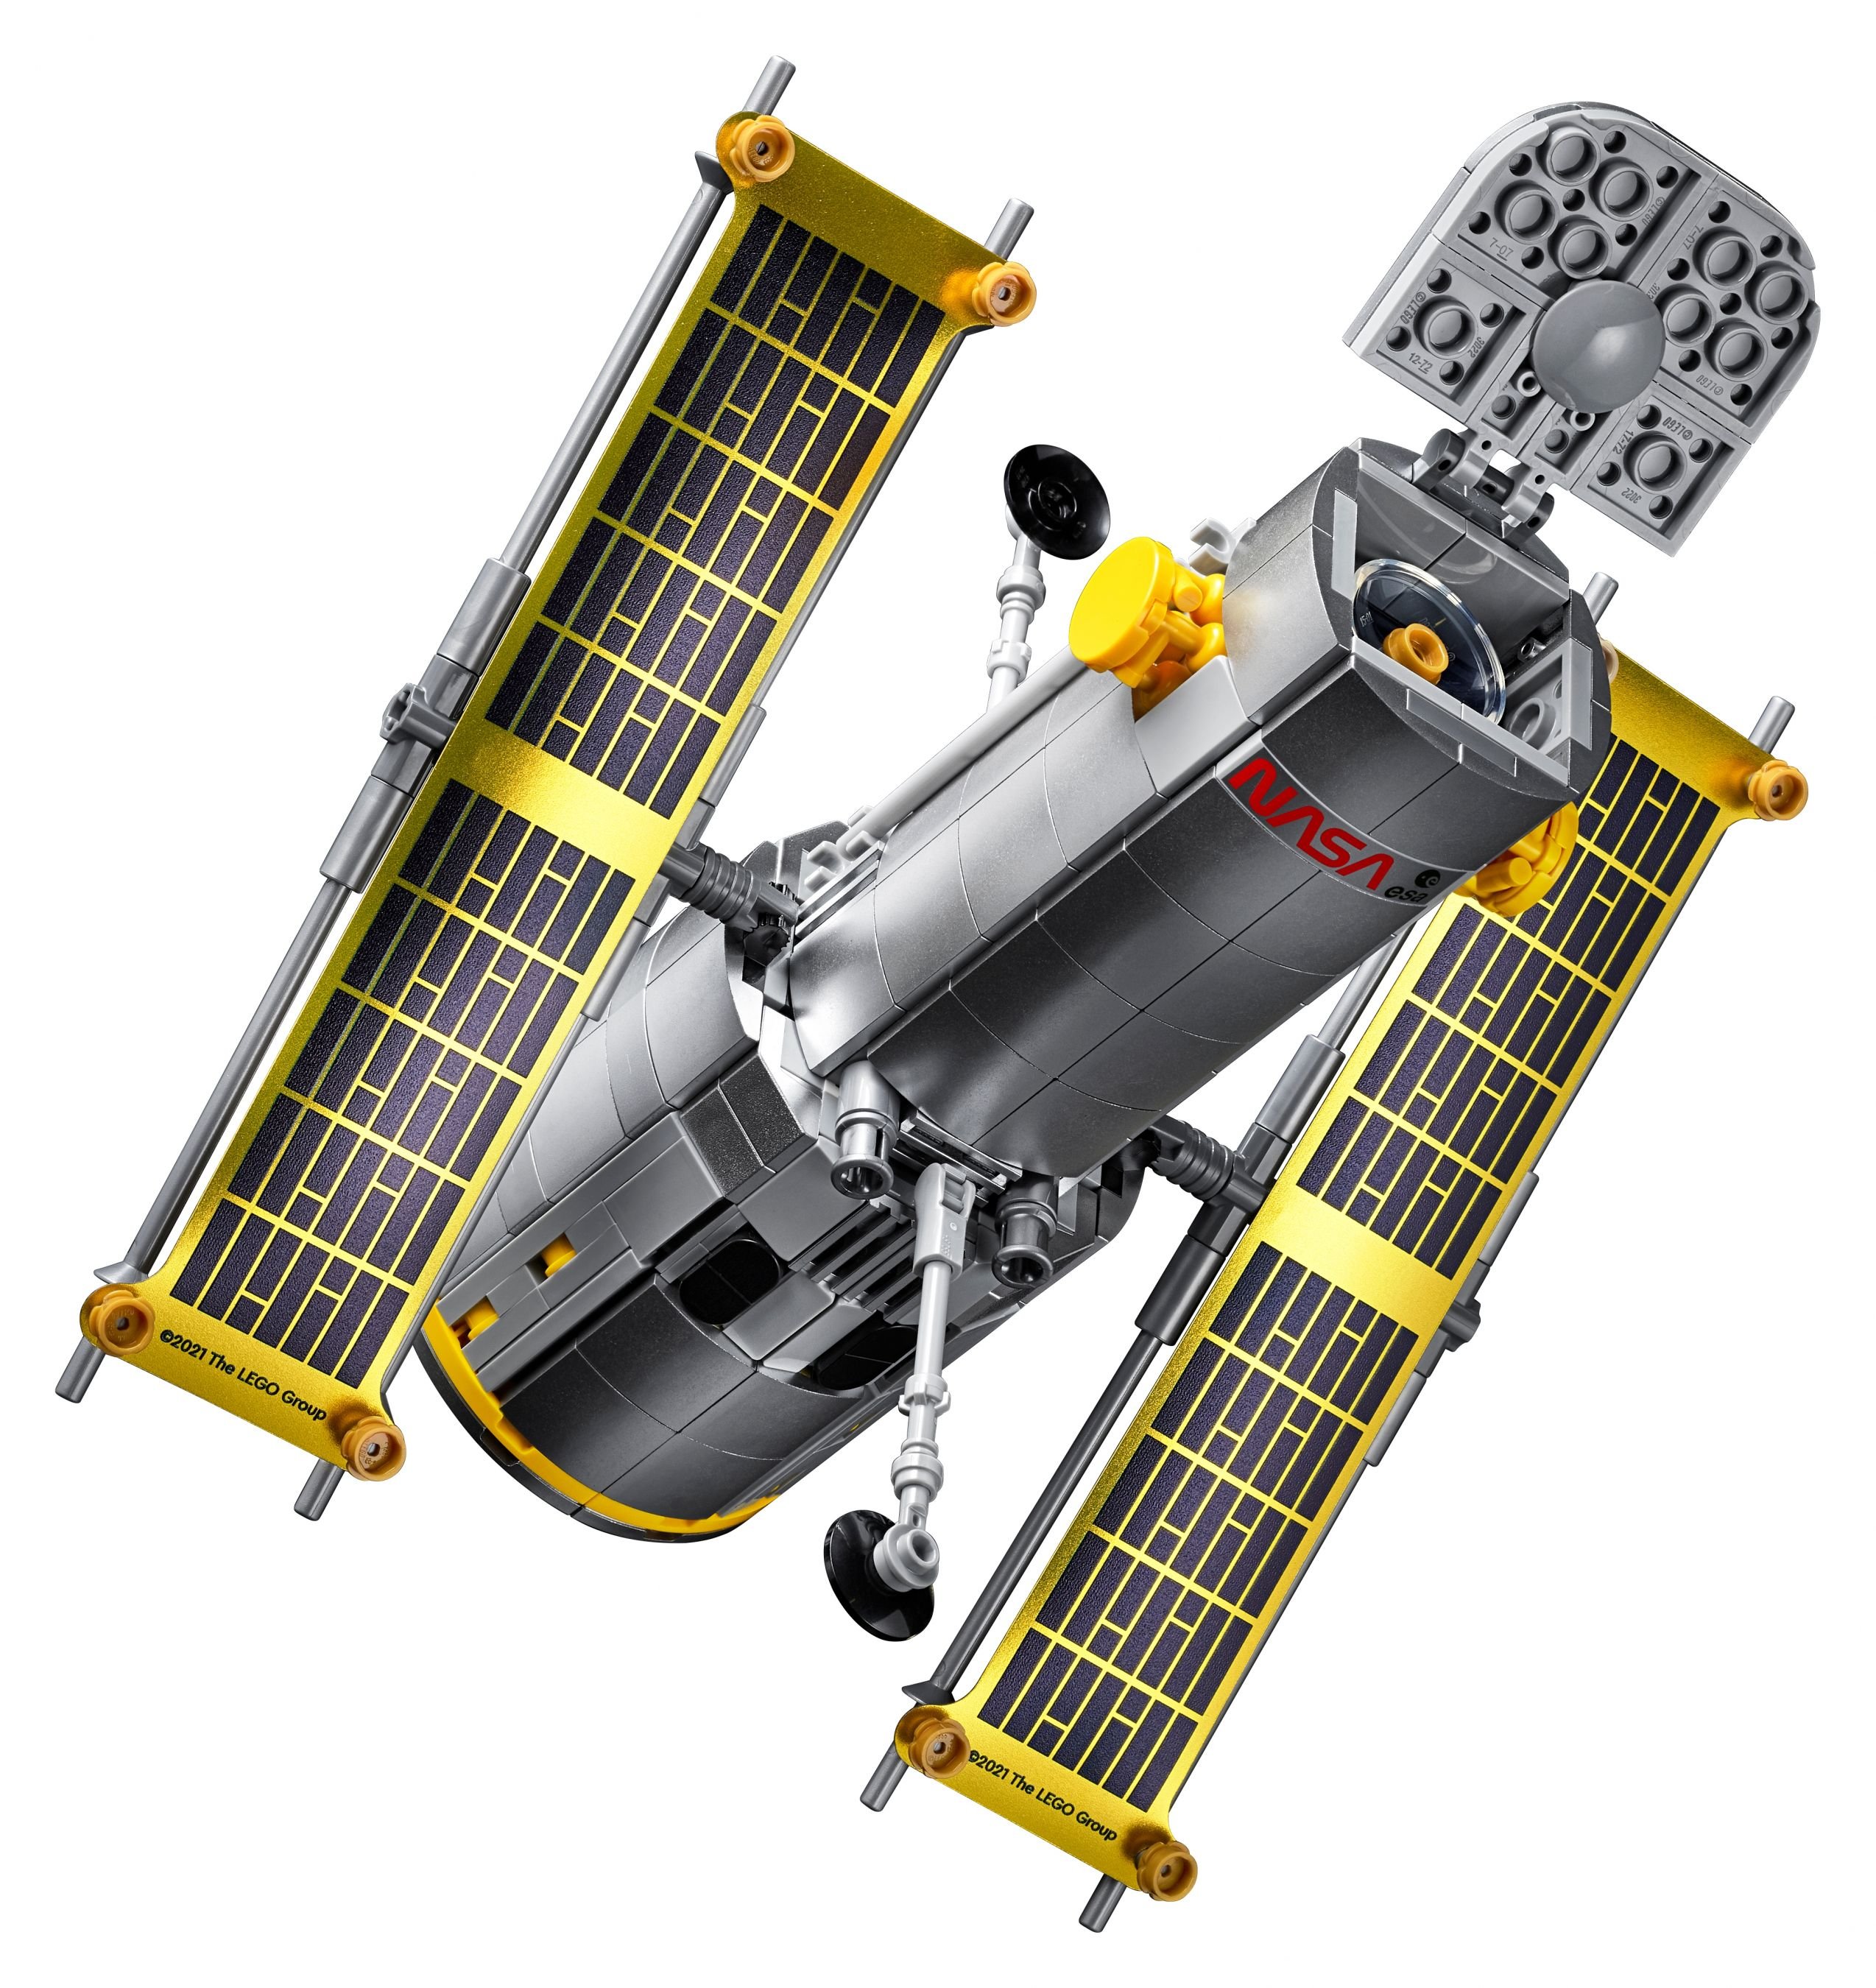 LEGO Advanced Models 10283 NASA-Spaceshuttle „Discovery“ LEGO_10283_alt11.jpg